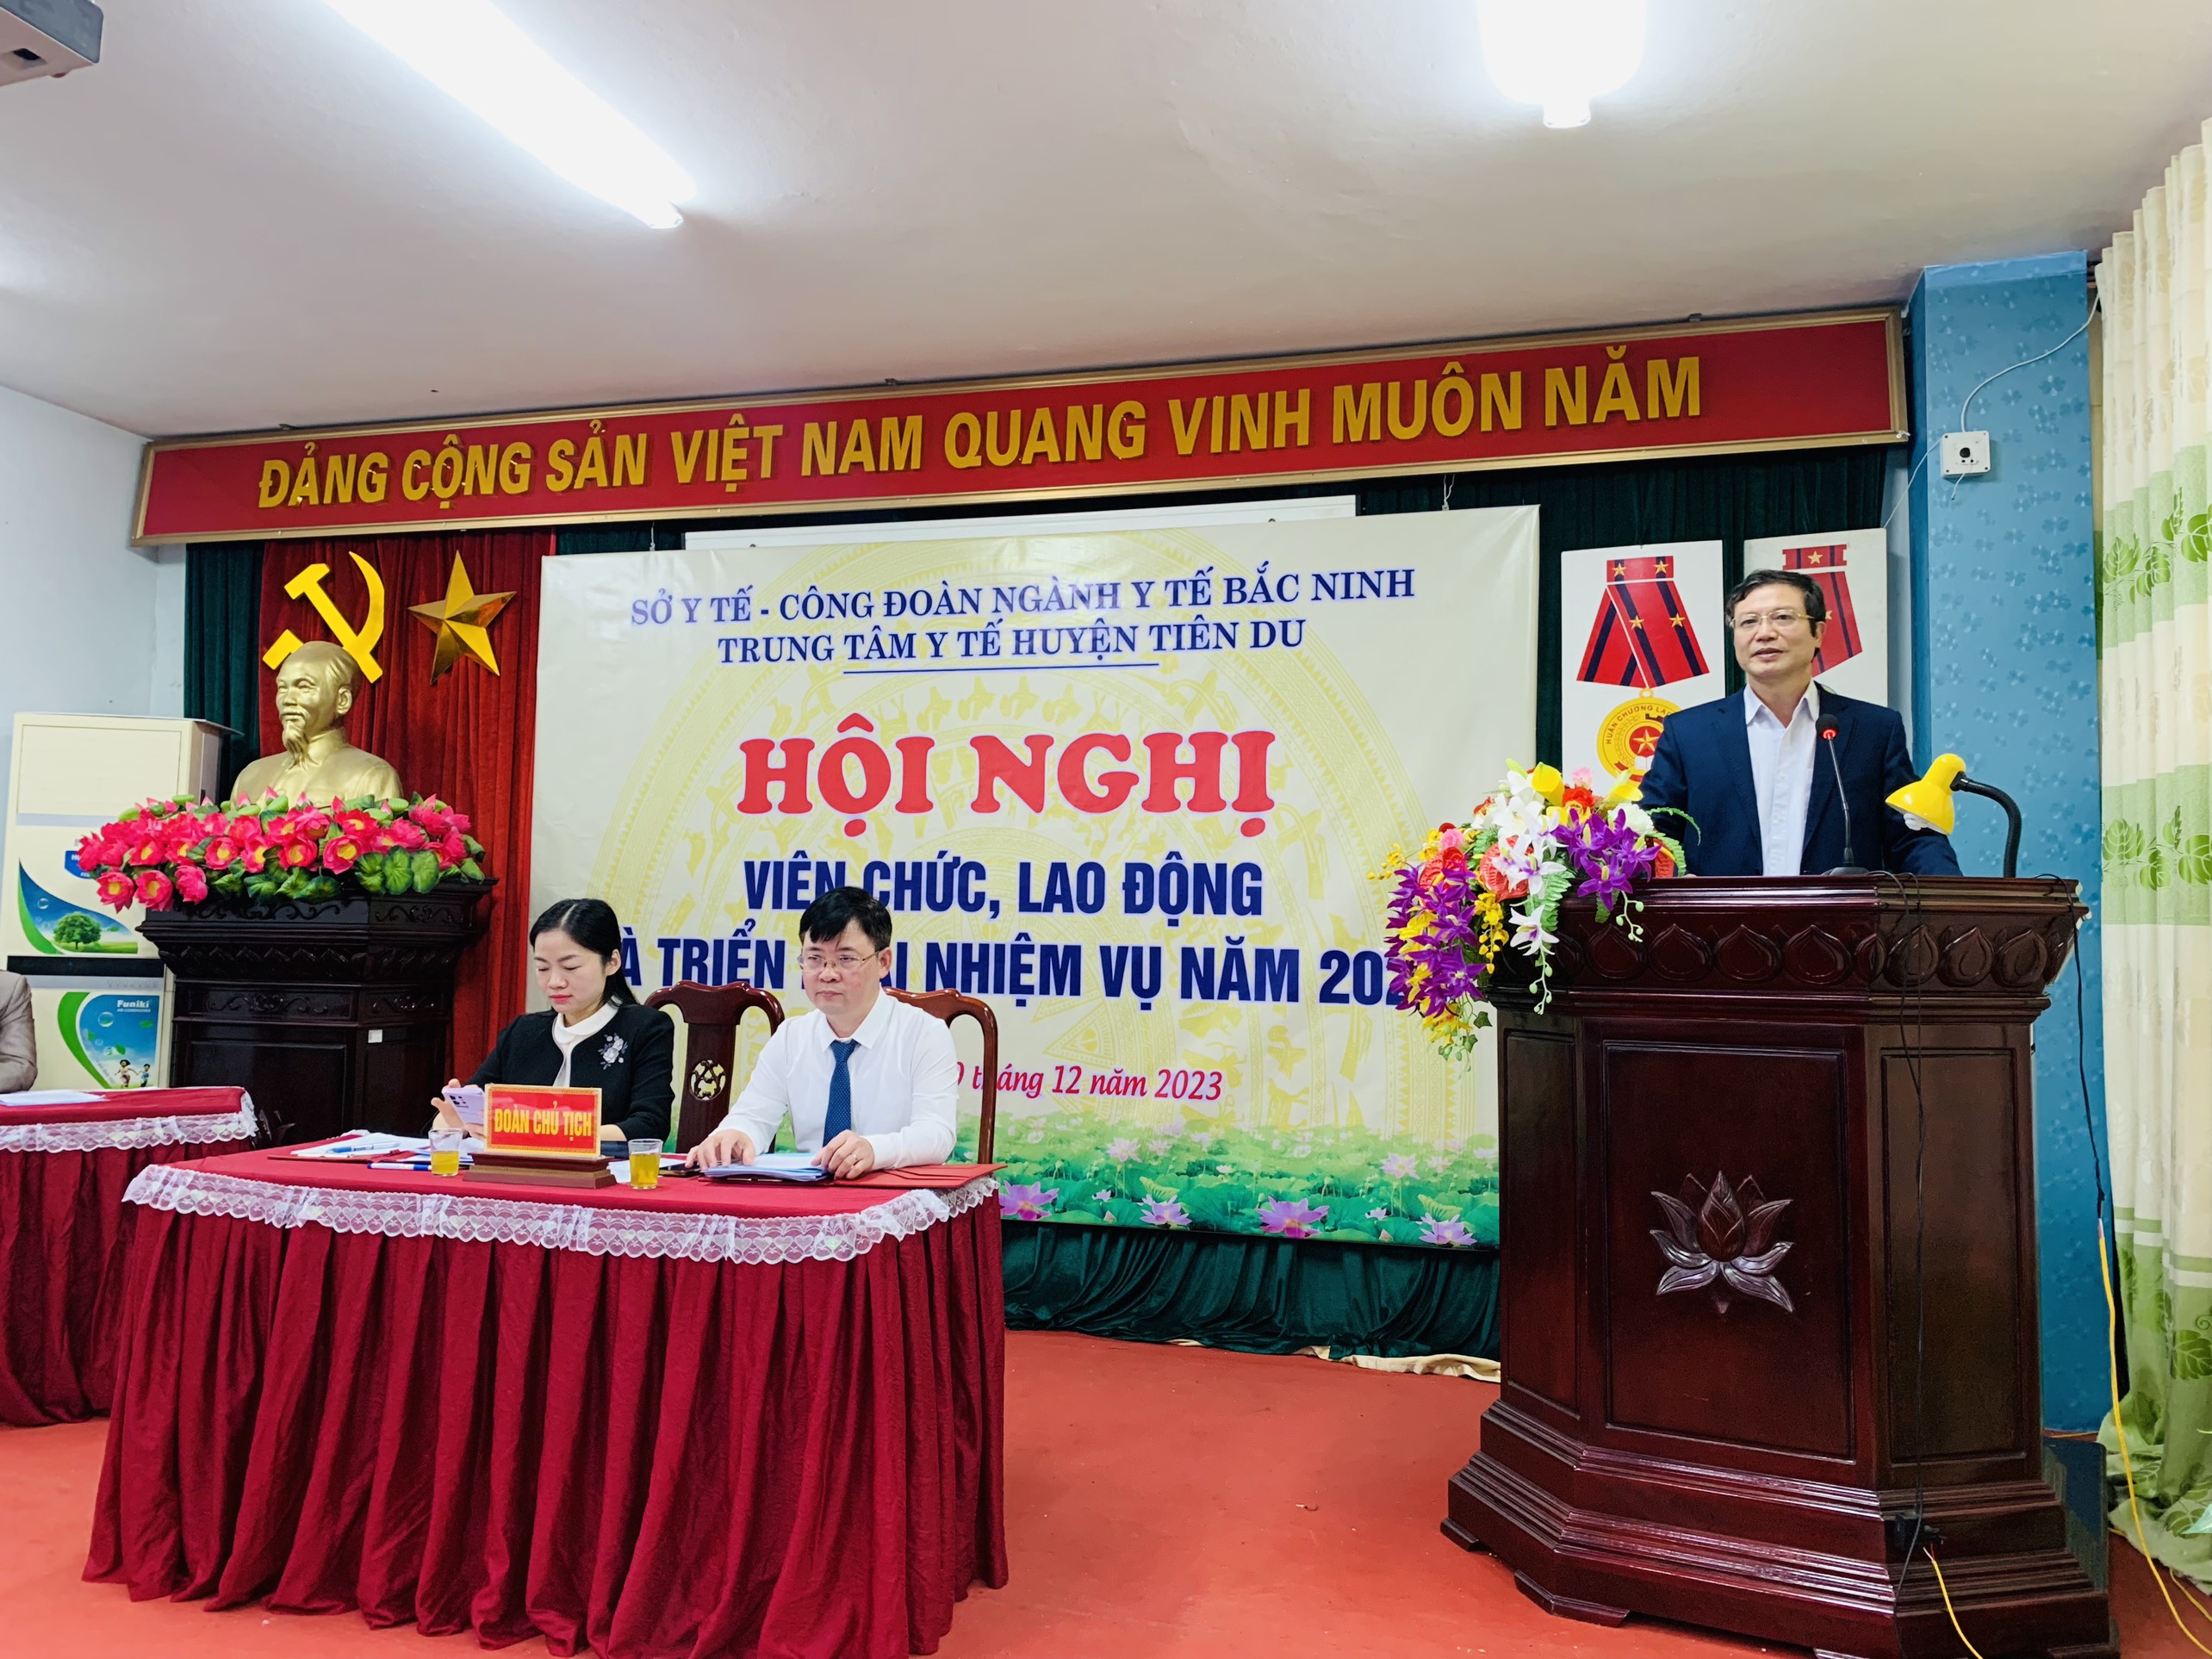 Trung tâm Y tế huyện Tiên Du tổ chức Hội nghị viên chức, lao động  và triển khai nhiệm vụ năm 2024